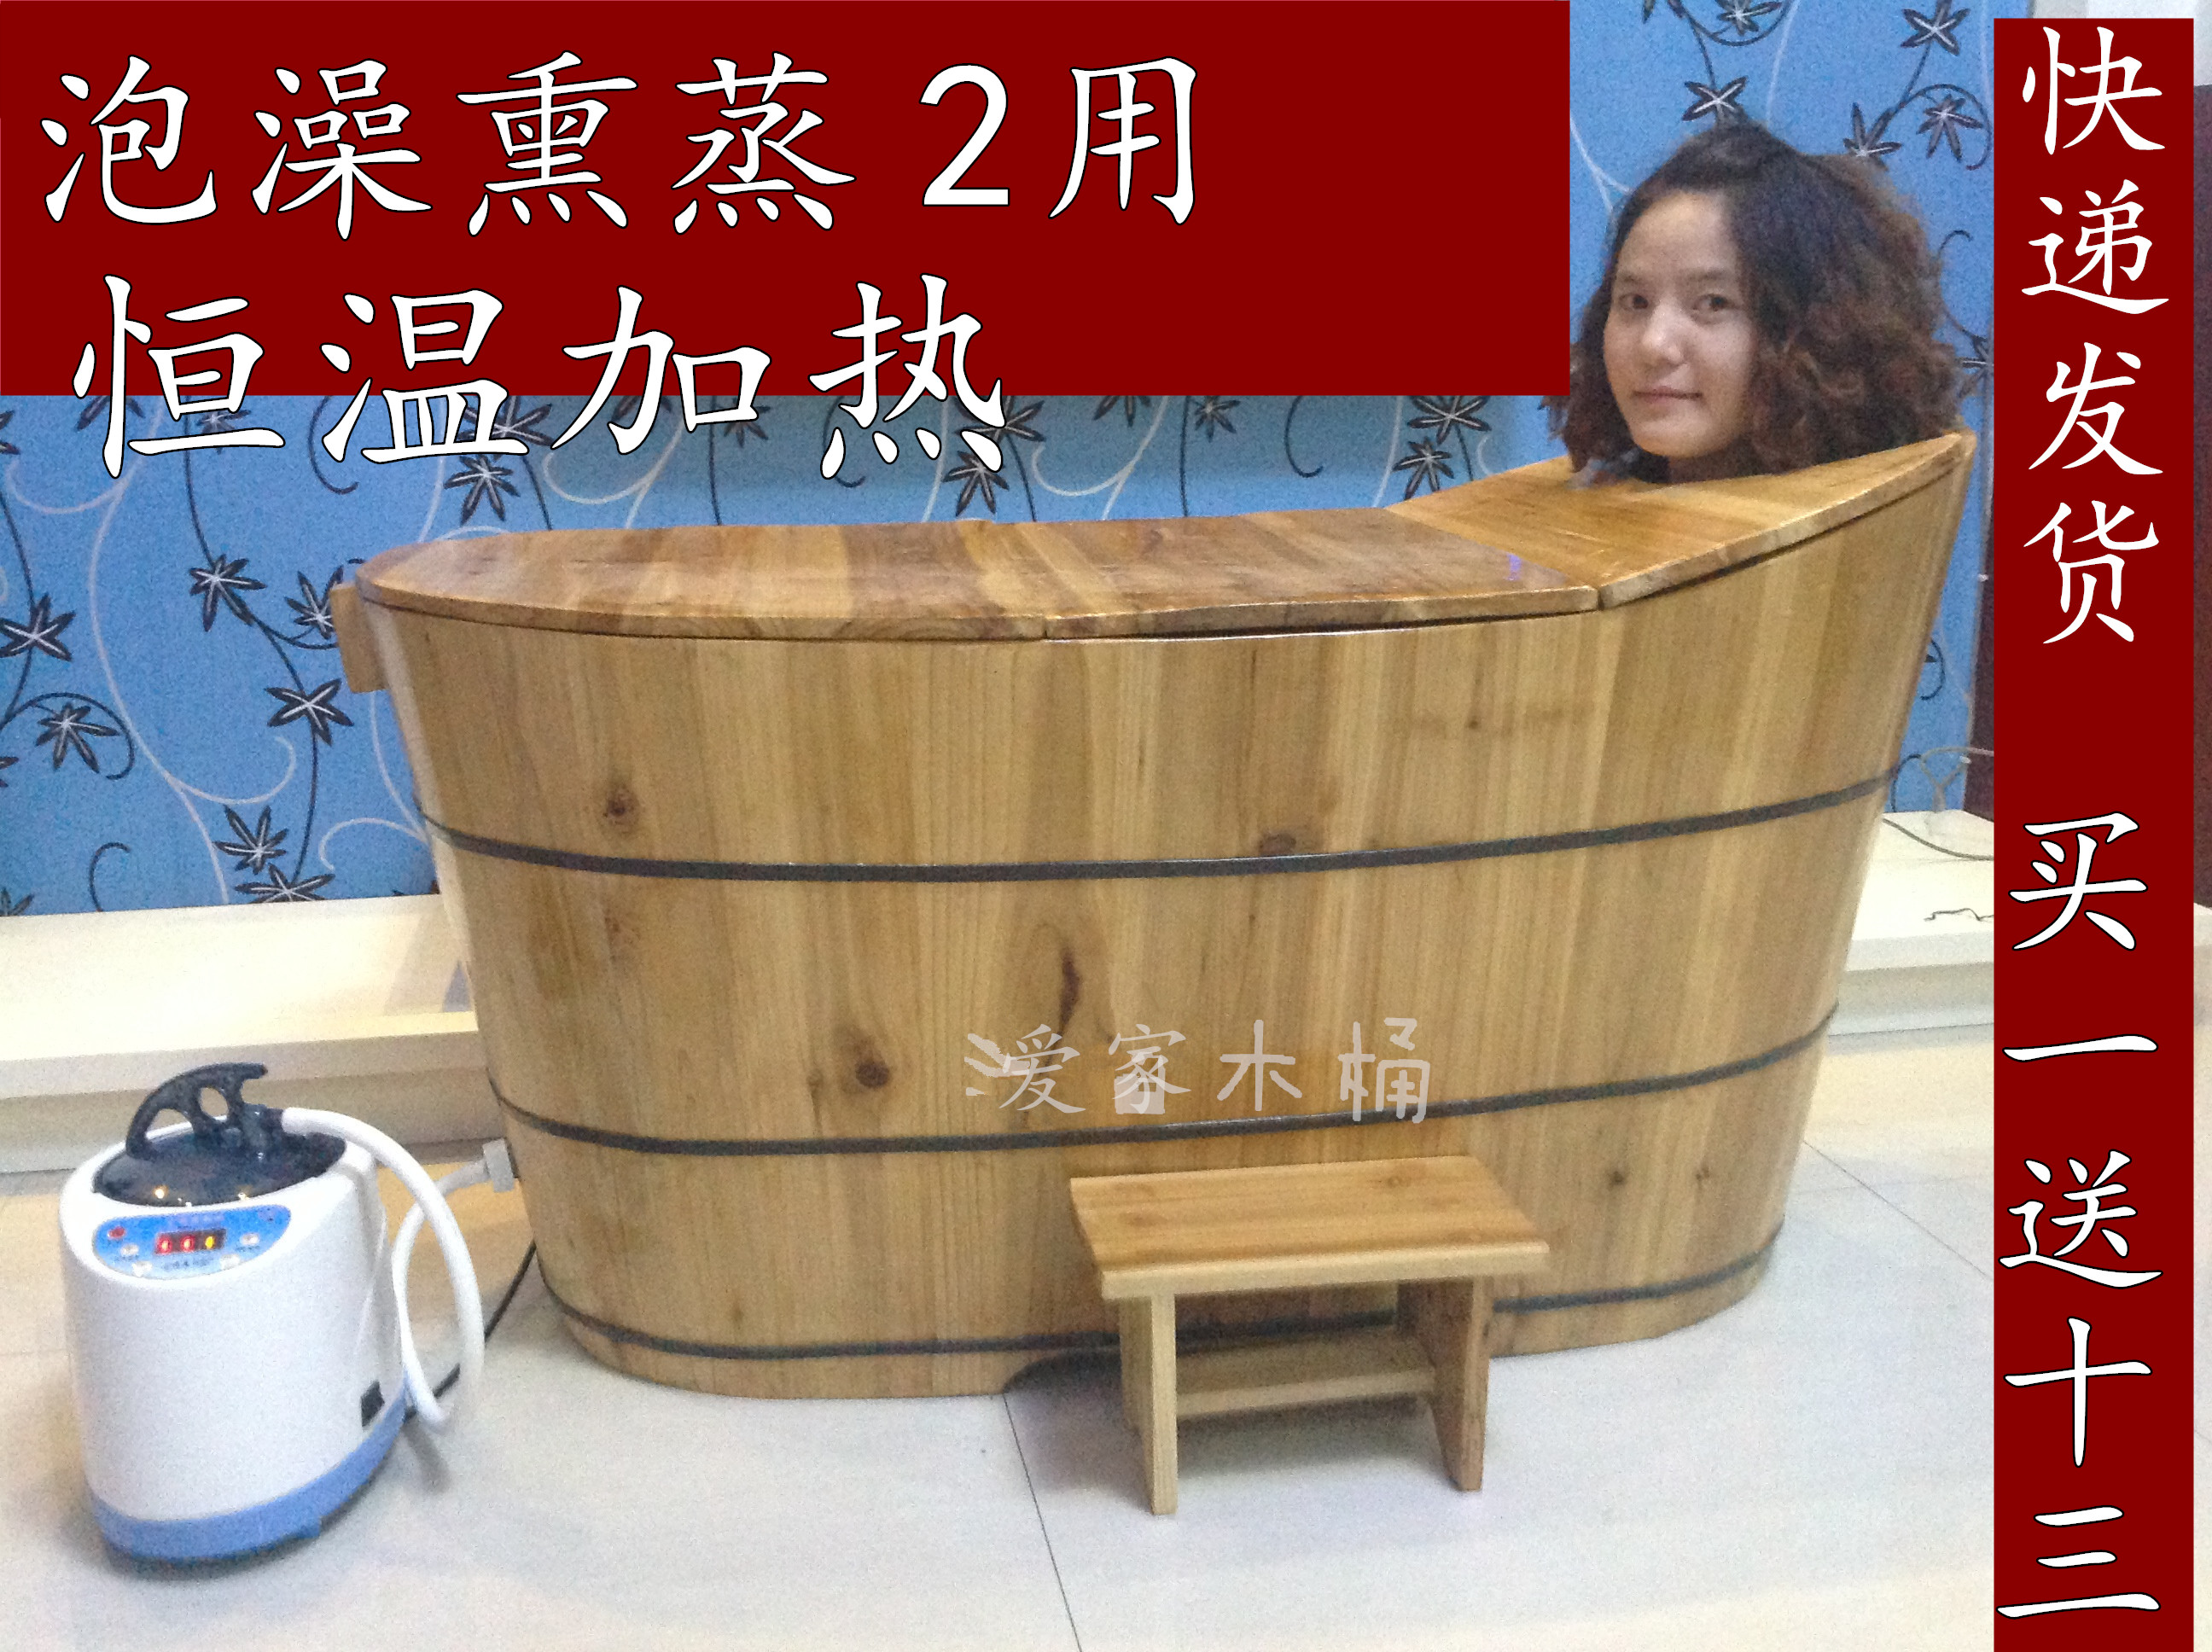 特价沐浴盆木桶杉木蒸汽桶全身熏蒸浴缸桑拿成人浴桶泡澡桶带盖子